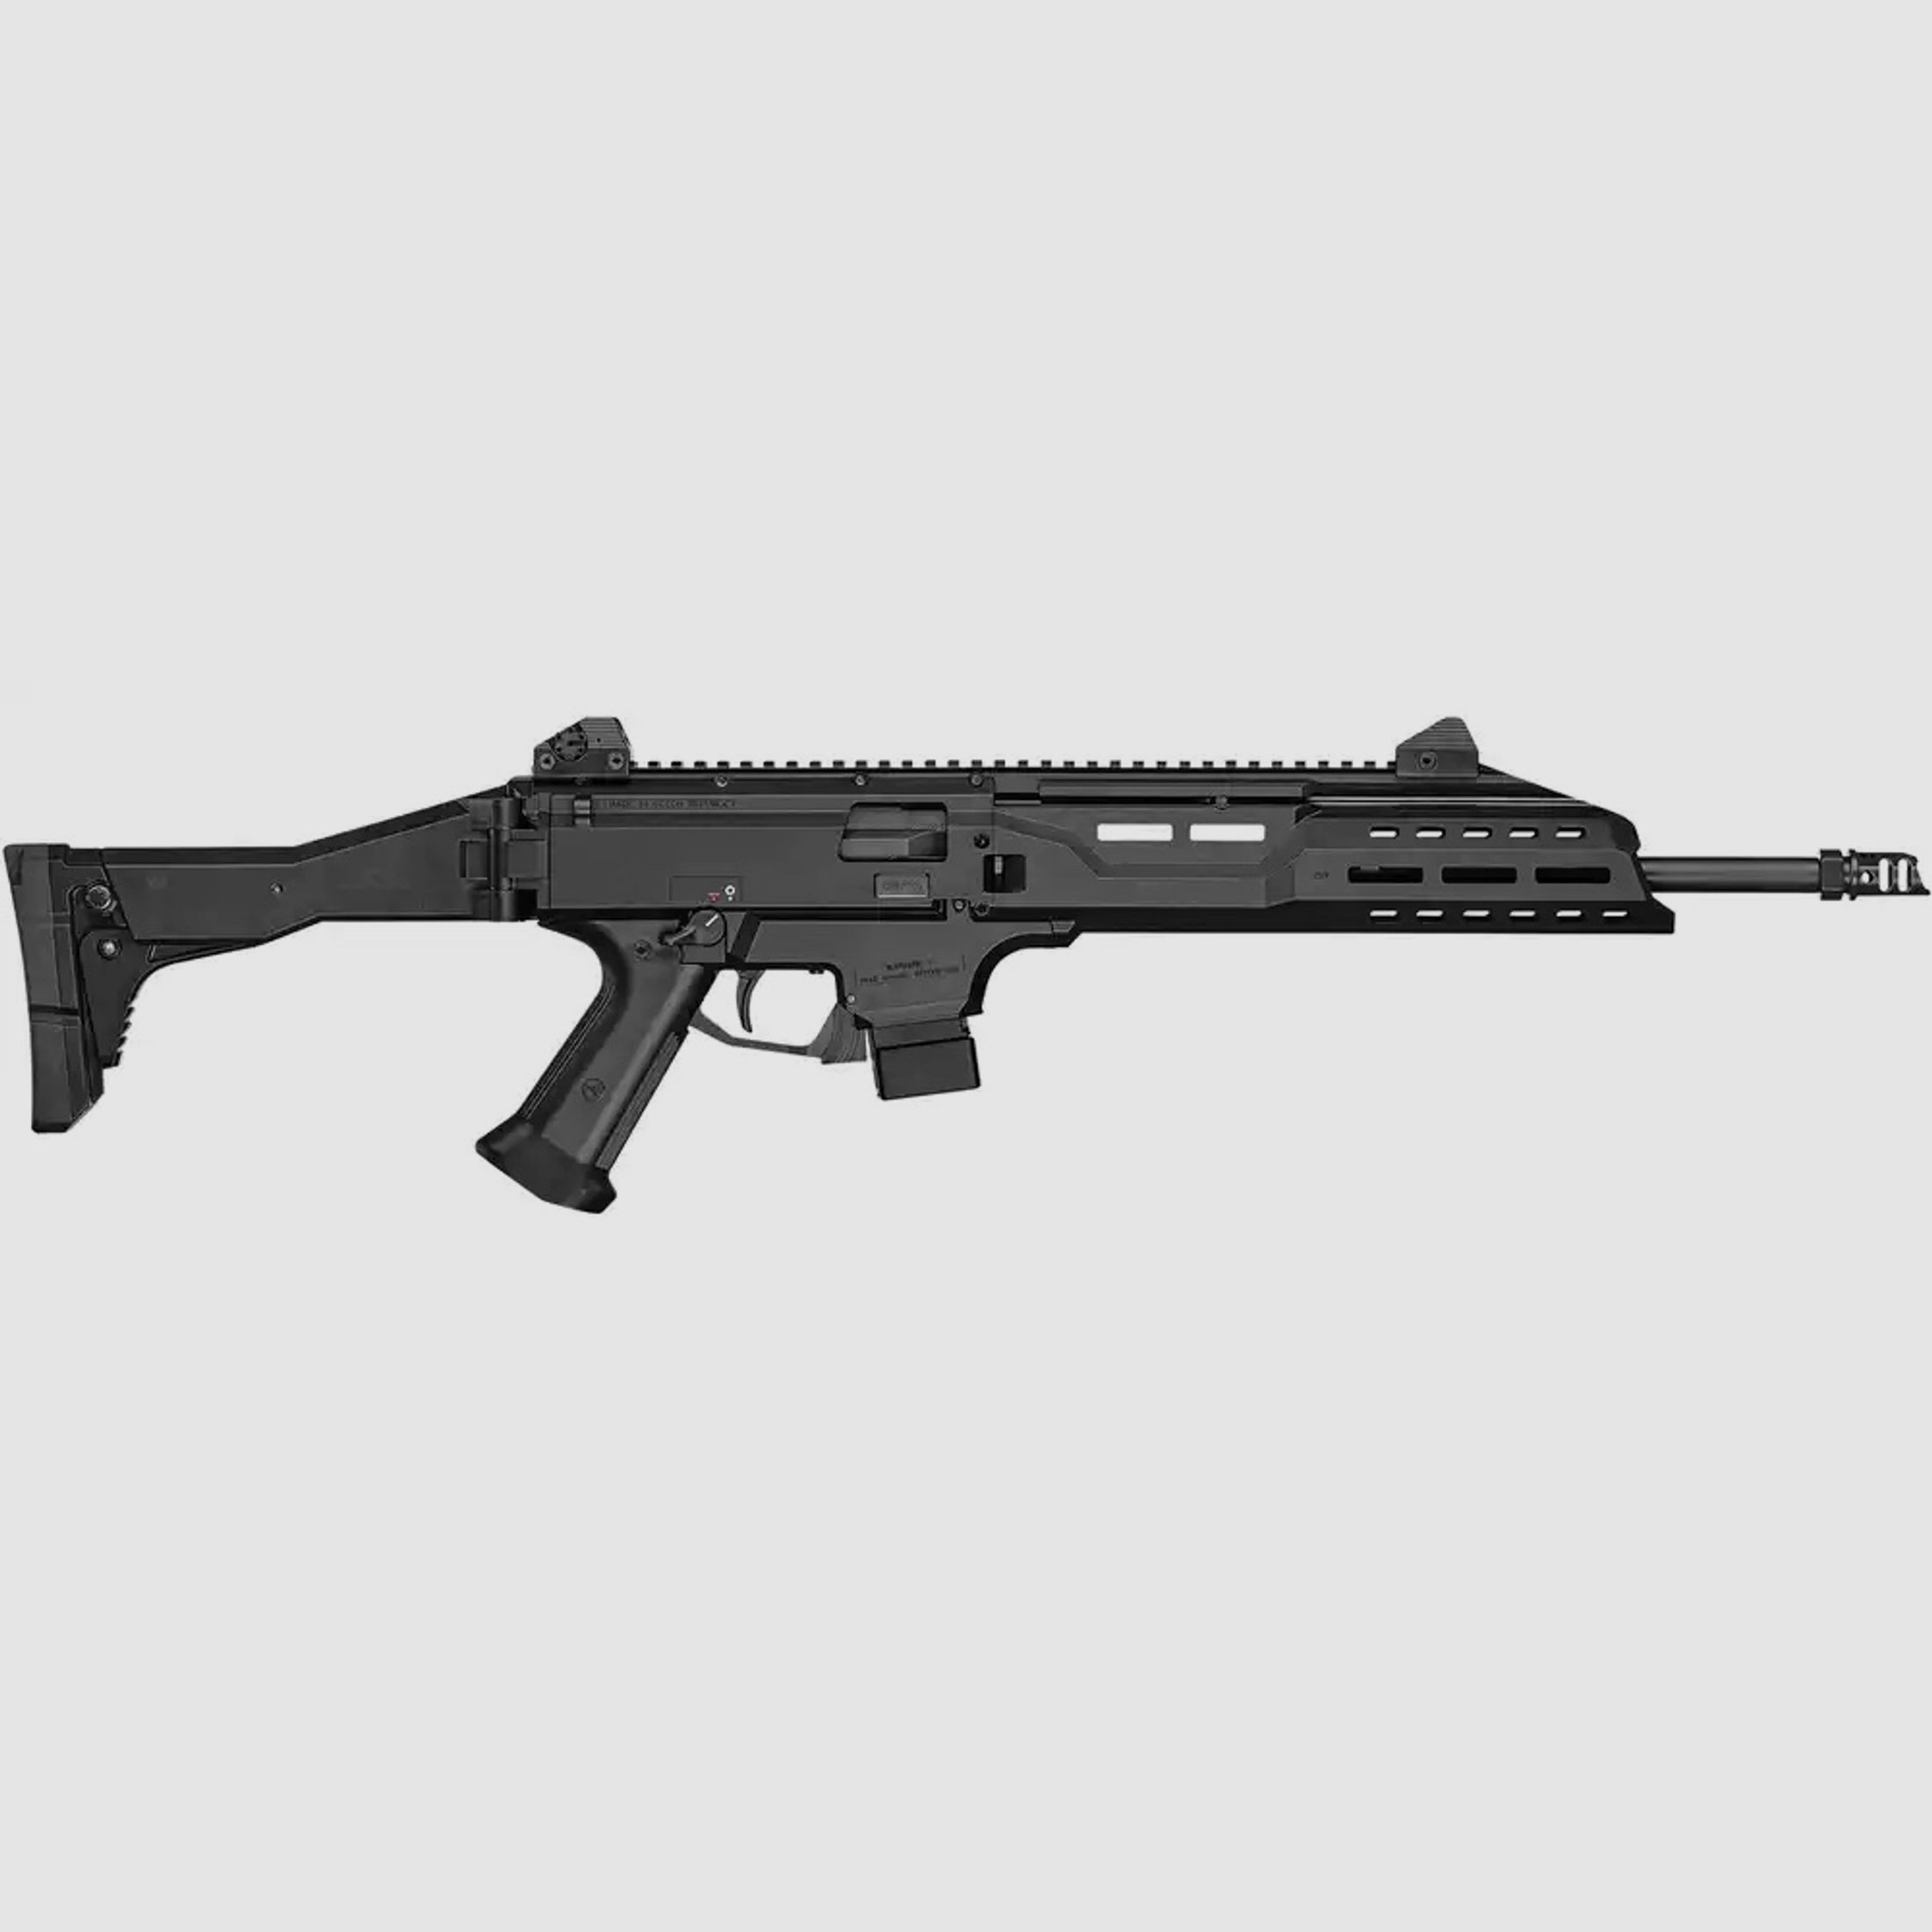 Selbstladebüchse Scorpion Evo 3 S1 Carbine Kaliber 9mm Luger mit Kompensator